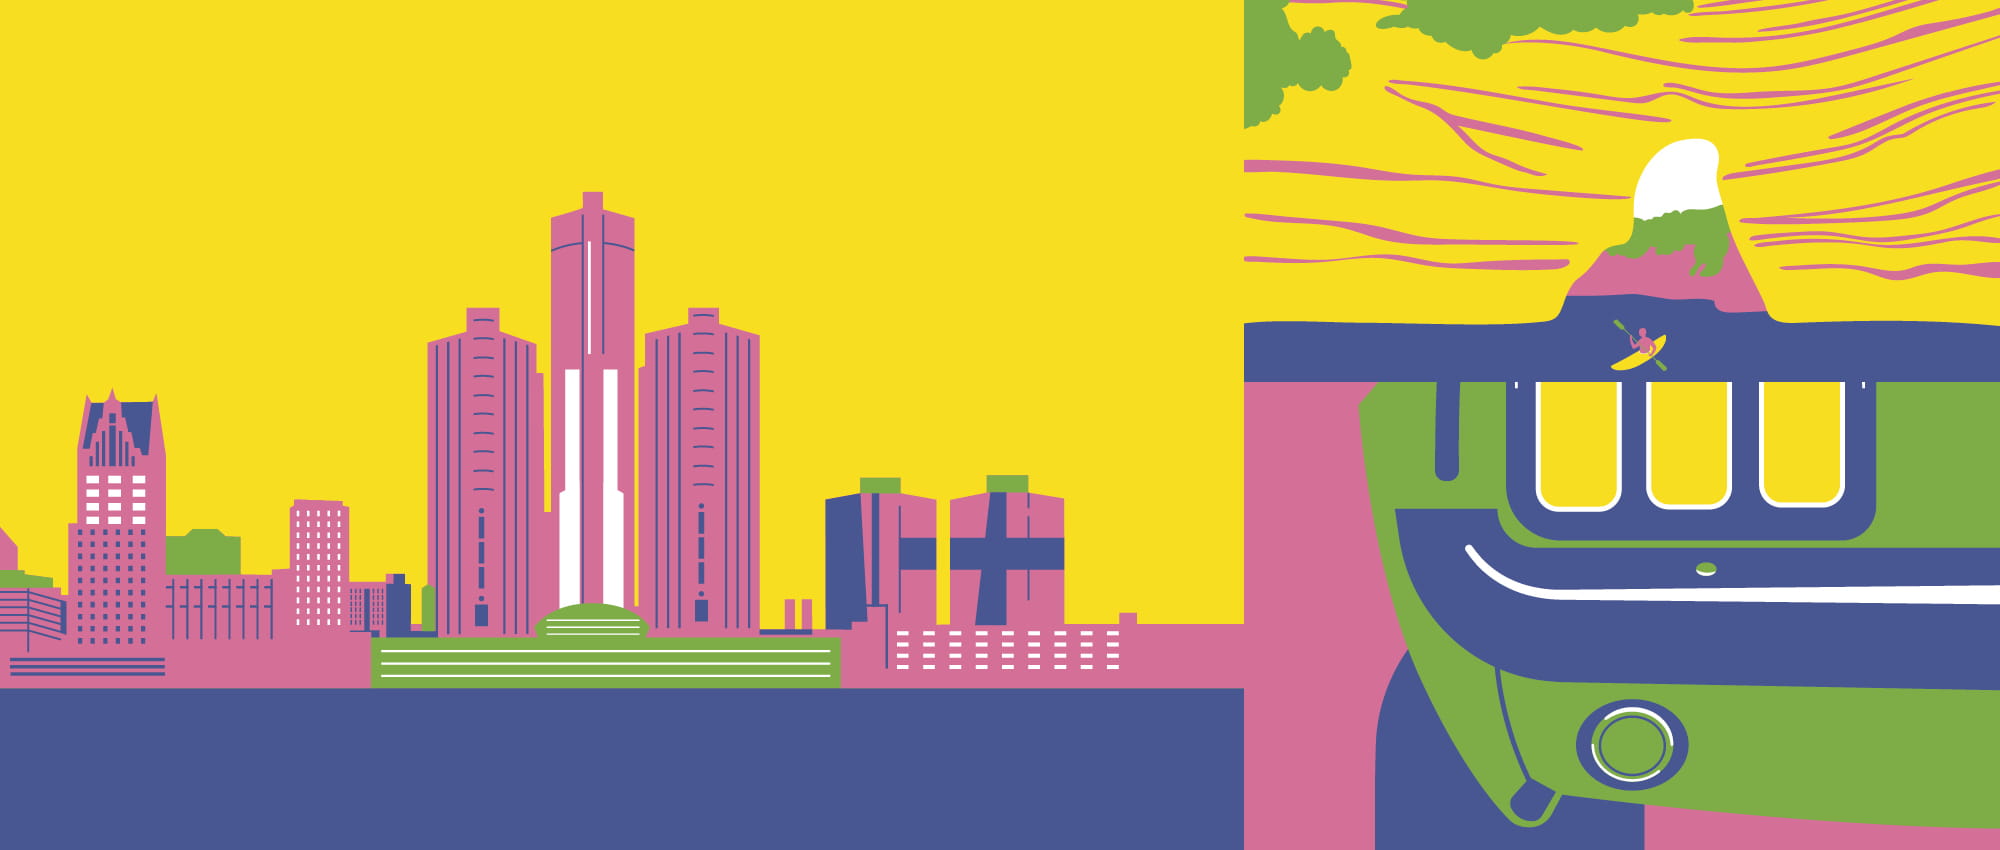 Collage von drei Illustrationen. Oben ist eine Skyline am Wasser abgebildet, unten links eine Klippe mit zwei Kajak-Fahrern und rechts eine Nahaufnahme von einem Autolicht